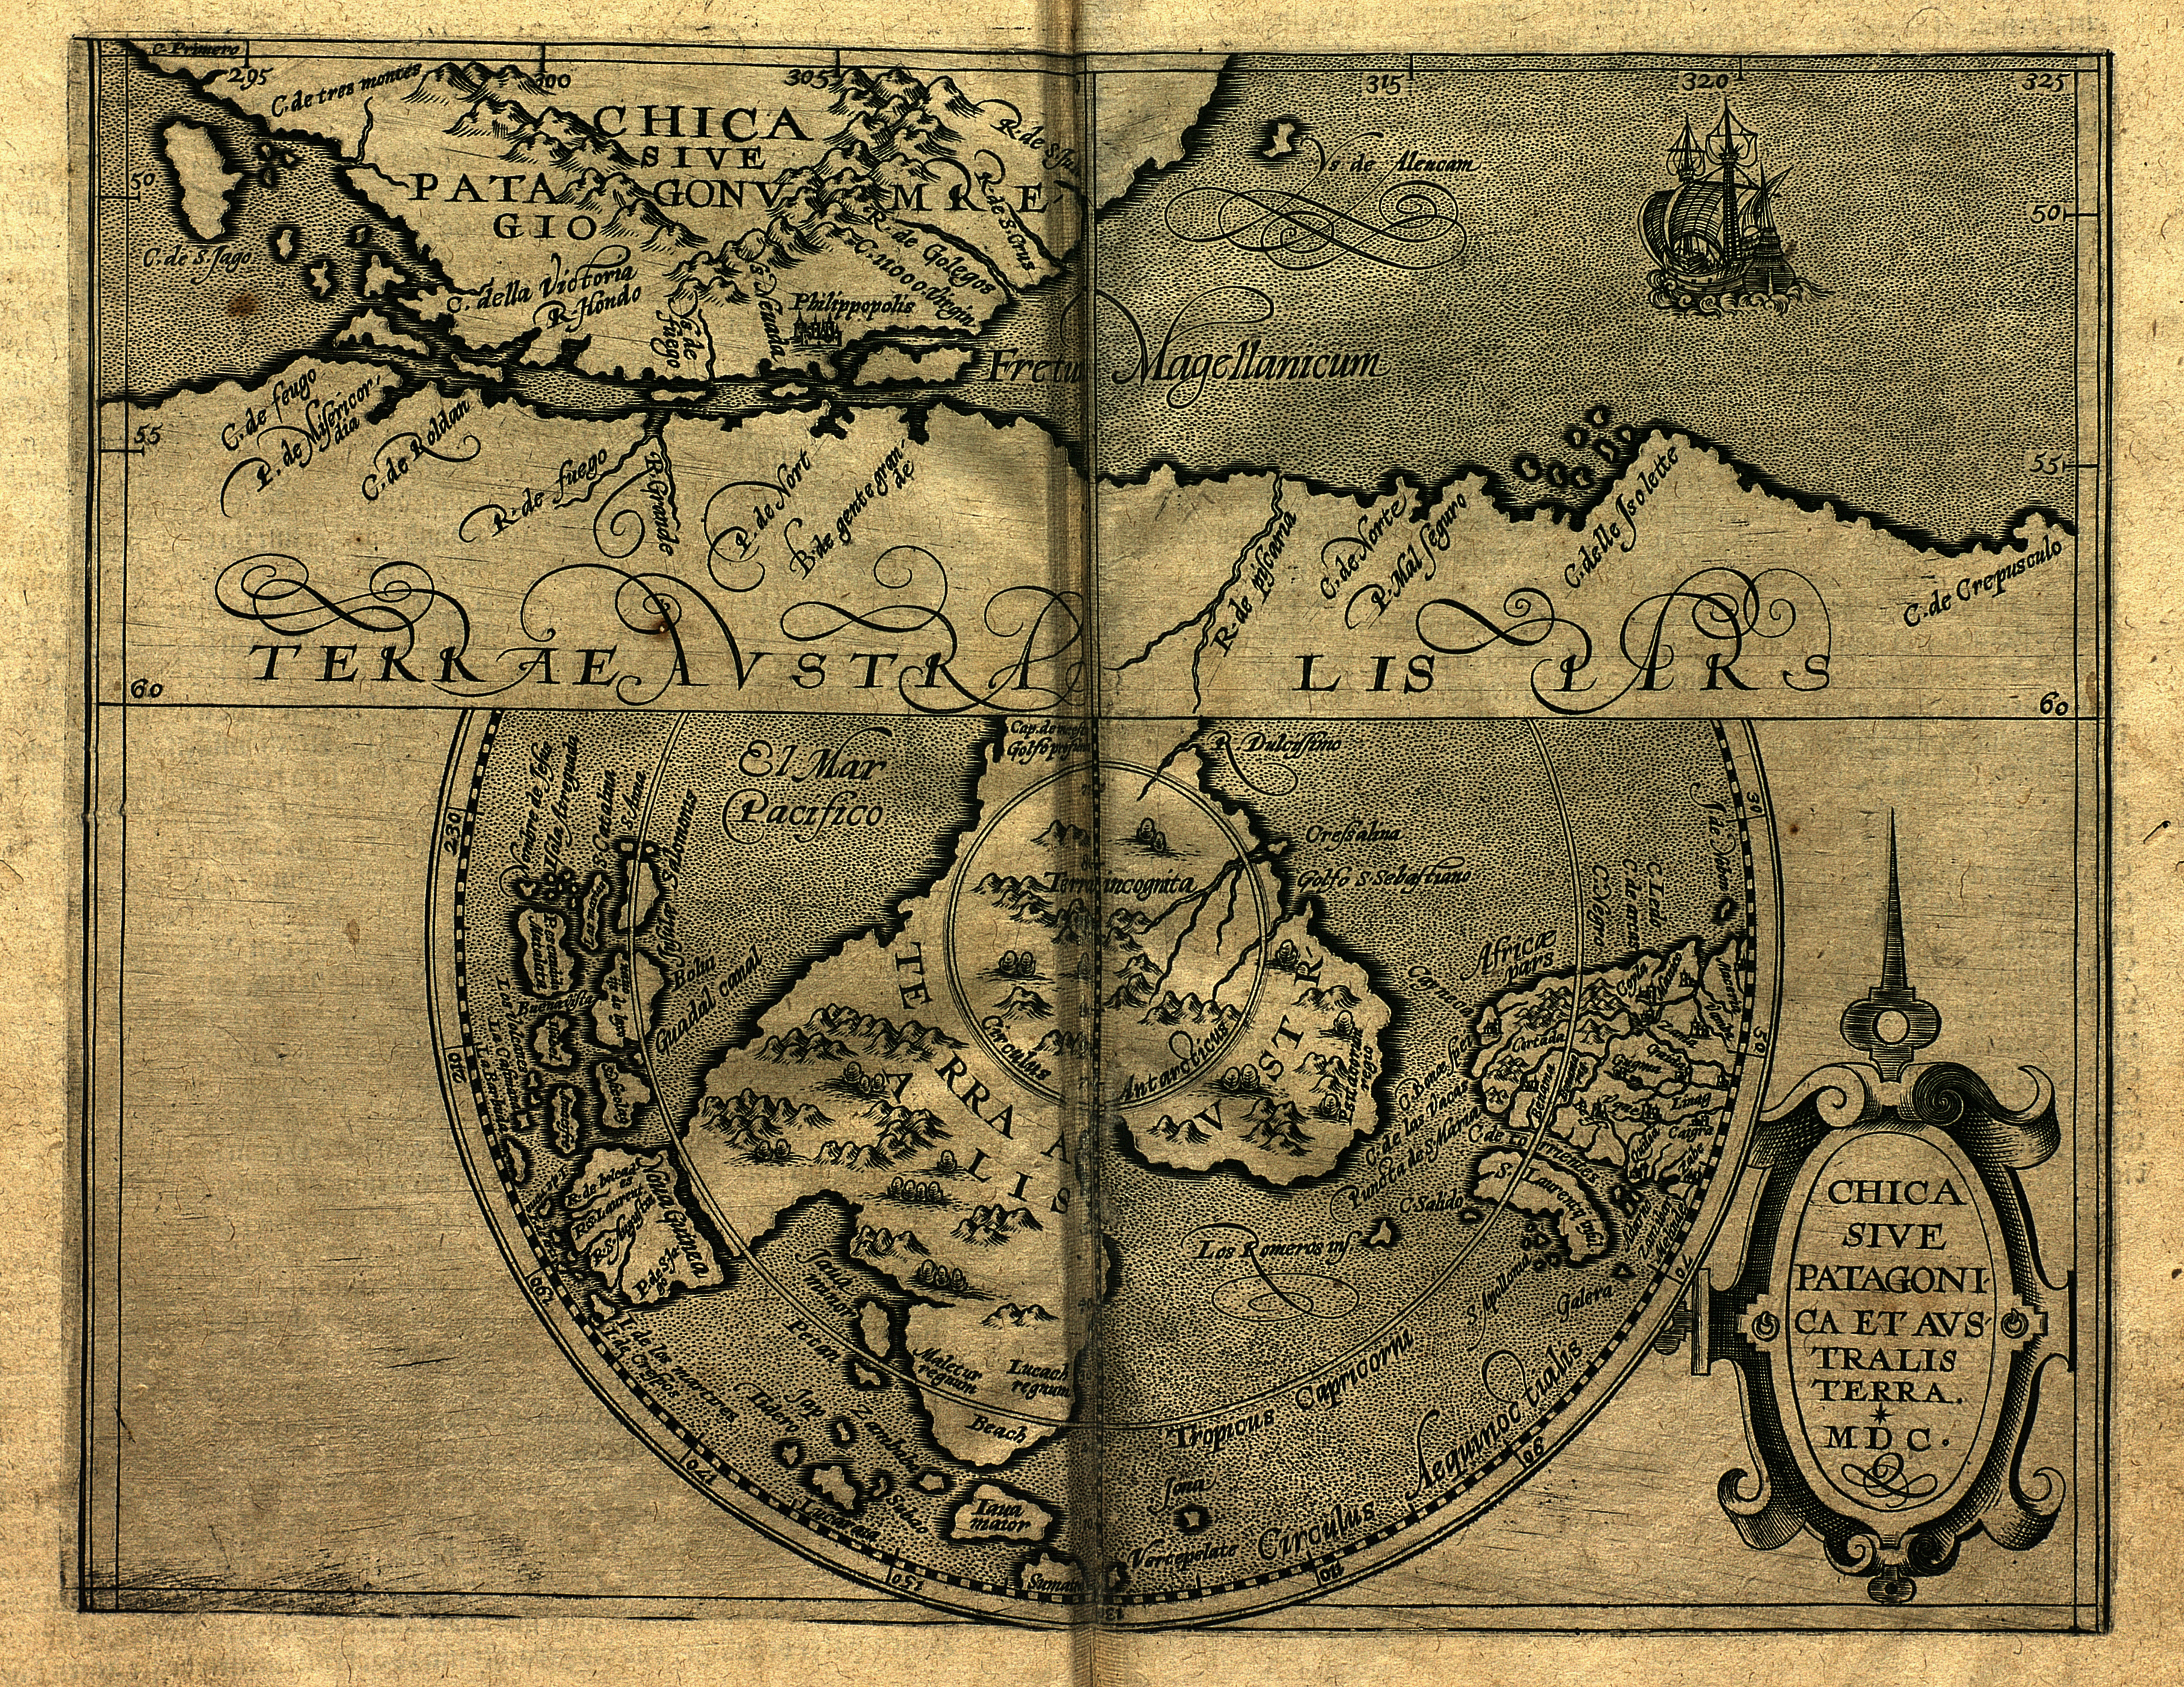 Chica sive patagonica. Aus: Matthias Quad: Geographisch Handtbuch. -  Köln: Buxemacher, 1600. - Signatur: 69 B 416 RH. 